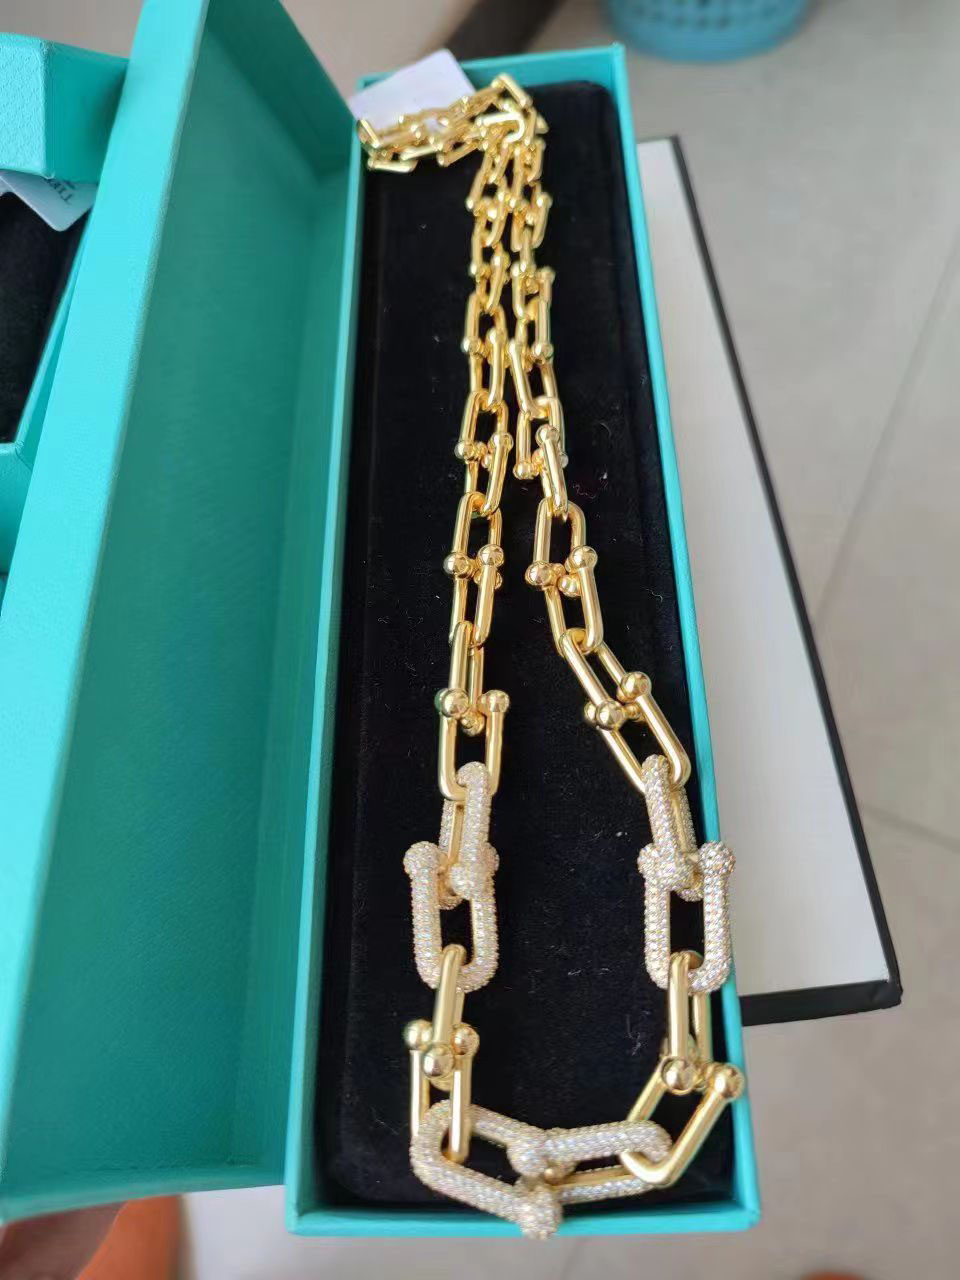 Nuovo argento 925 placcato oro 18k braccialetto pendente collana cambiamento graduale anello moda gioielli designer donna uomo coppia catena cubana bracciali orecchini festa di nozze